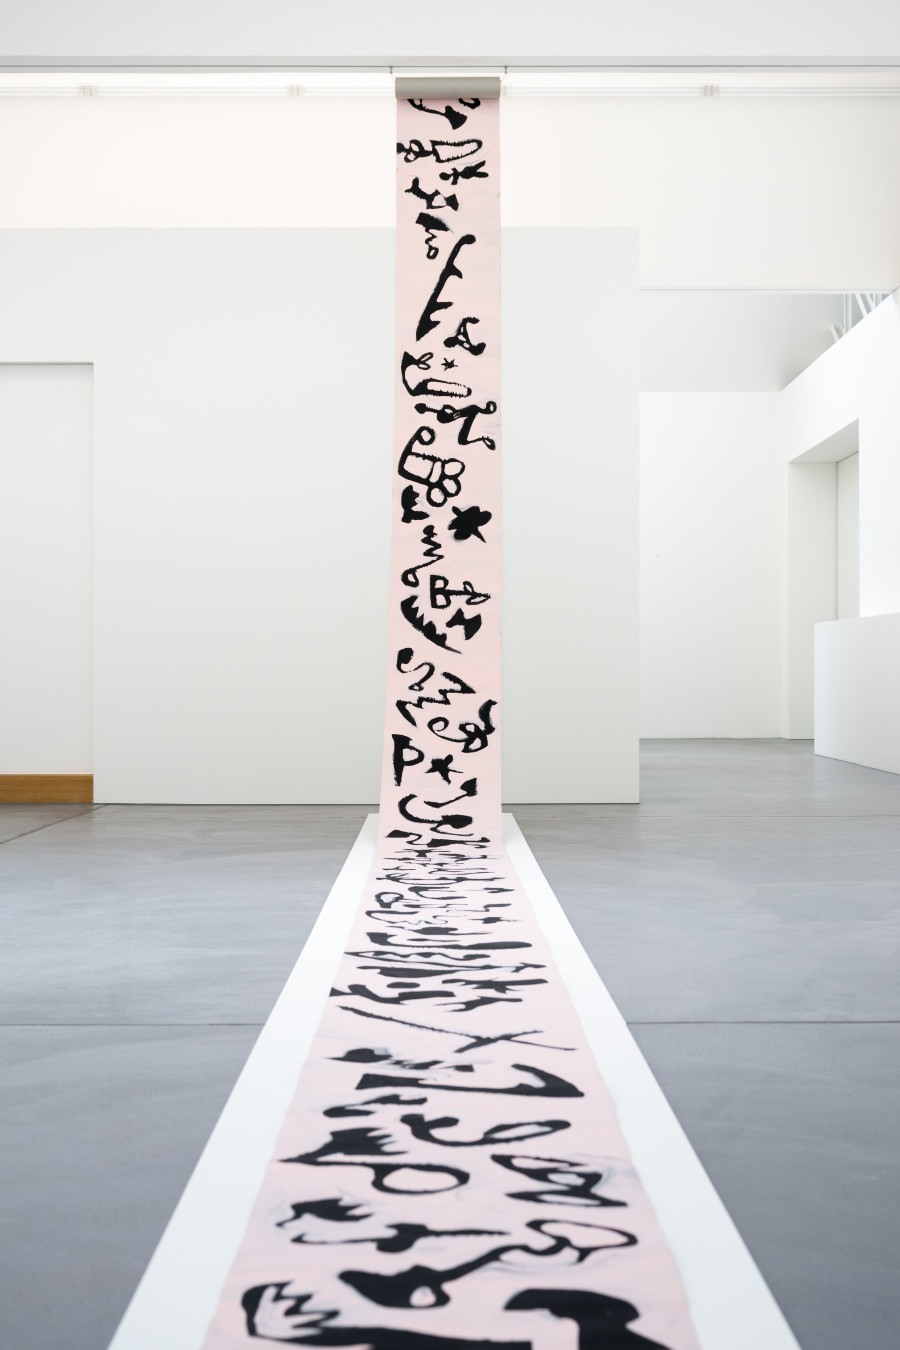 Marianne Eigenheer's exhibition, Installation view, 2023, von Bartha.